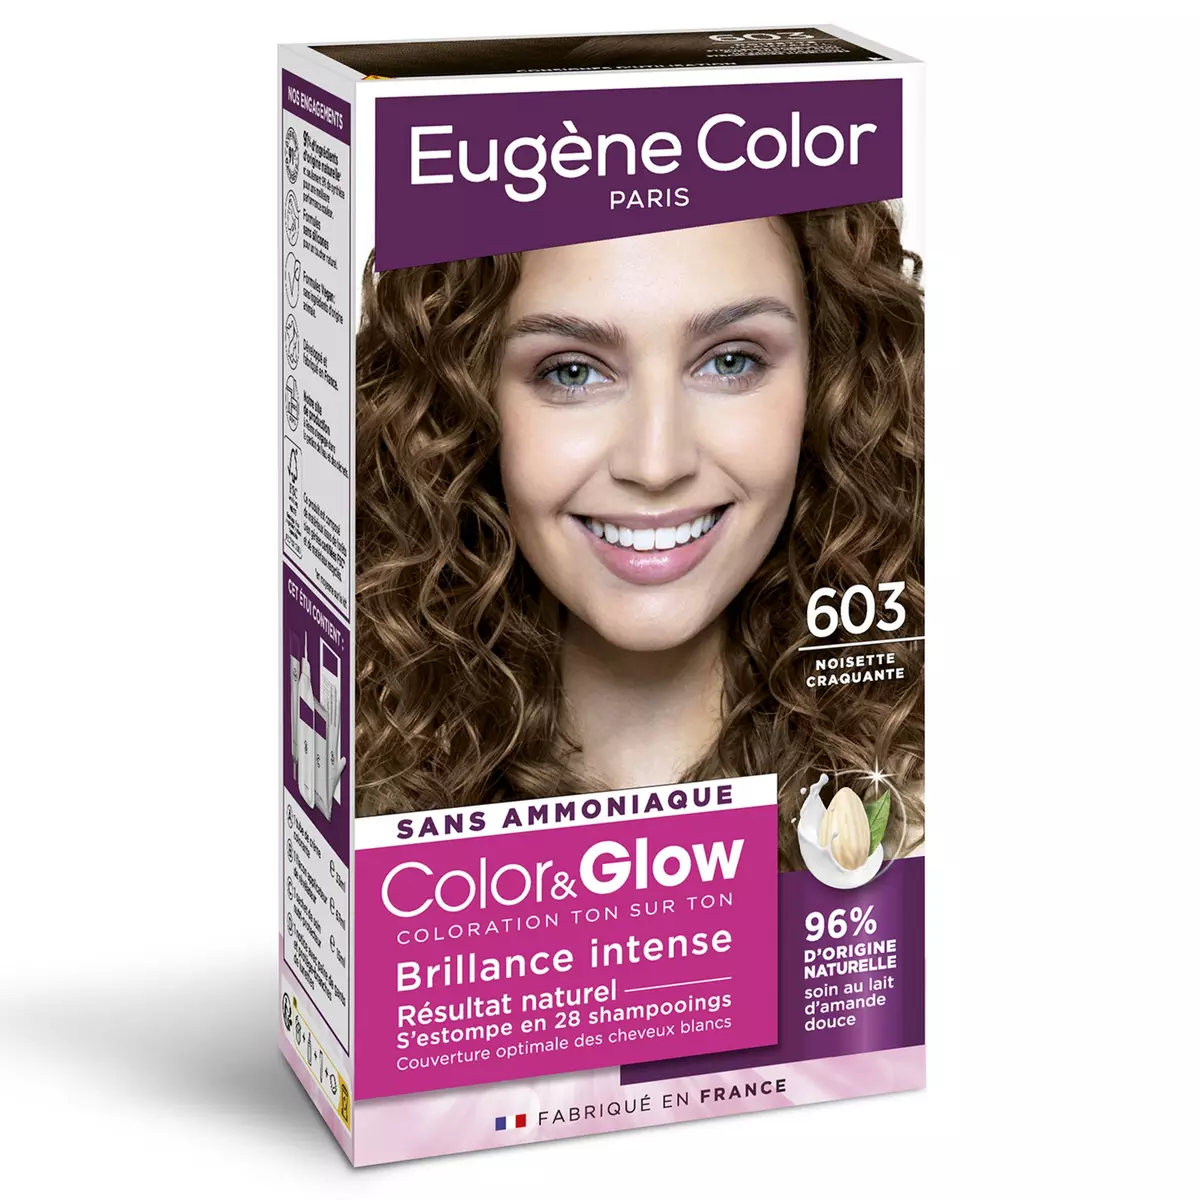 EUGENE COLOR Coloration glow noisette craquante 603 1 kit pas cher ...